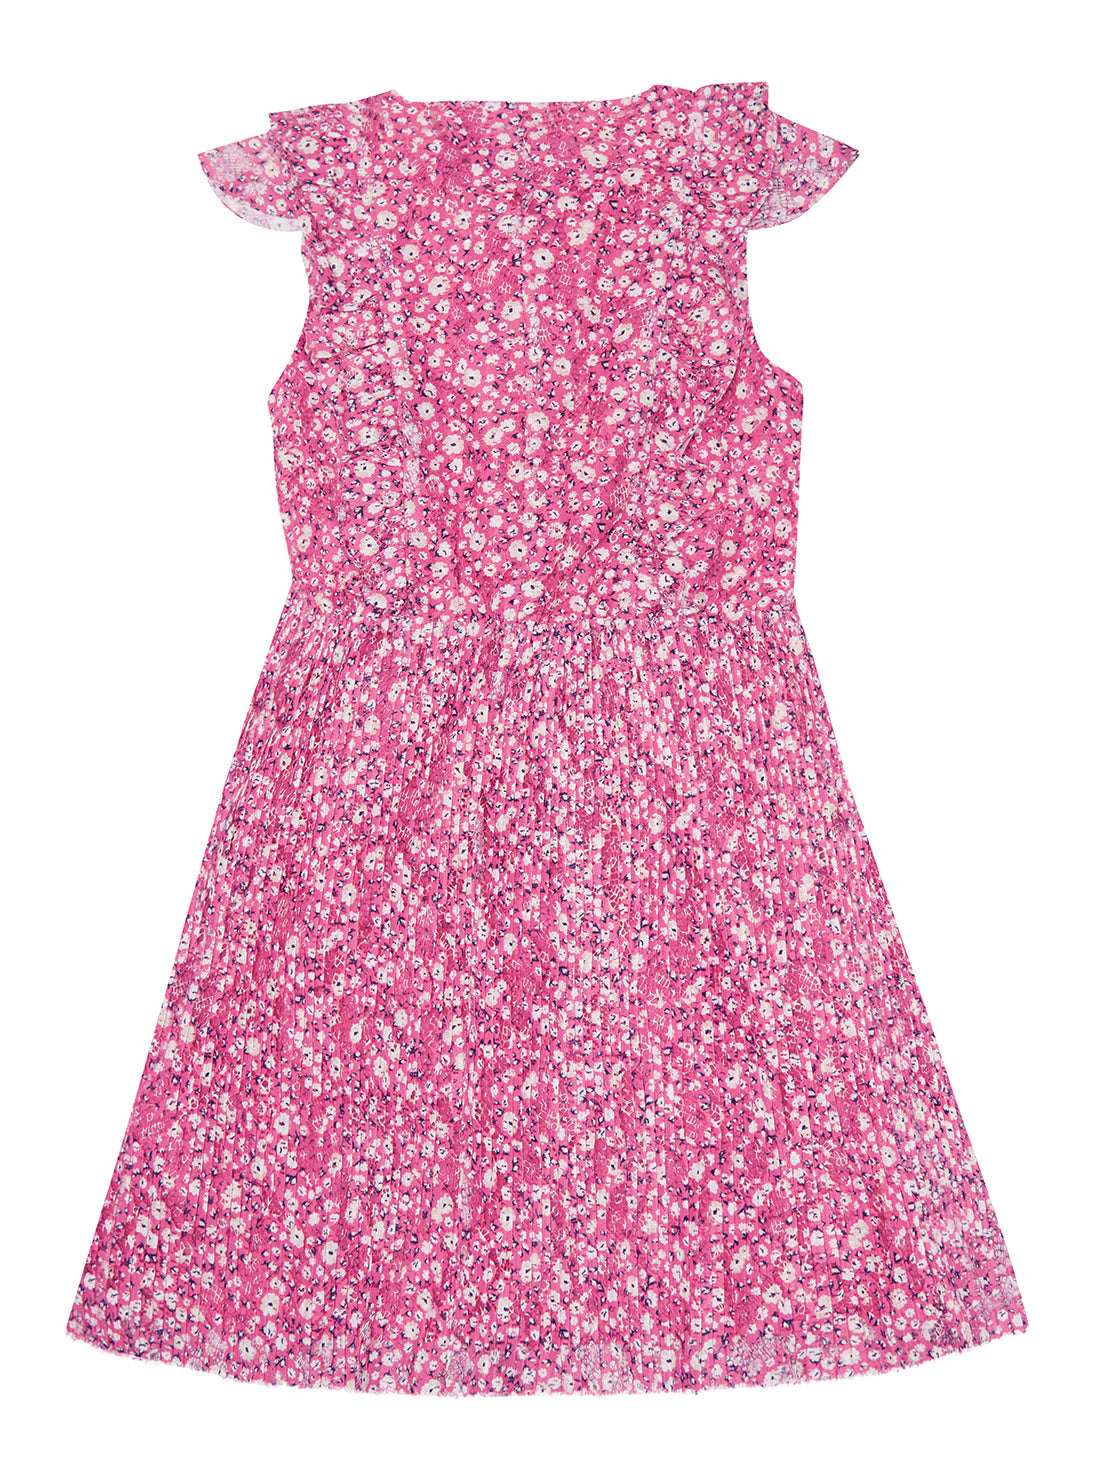 Pink Floral Lace Dress (6-14)